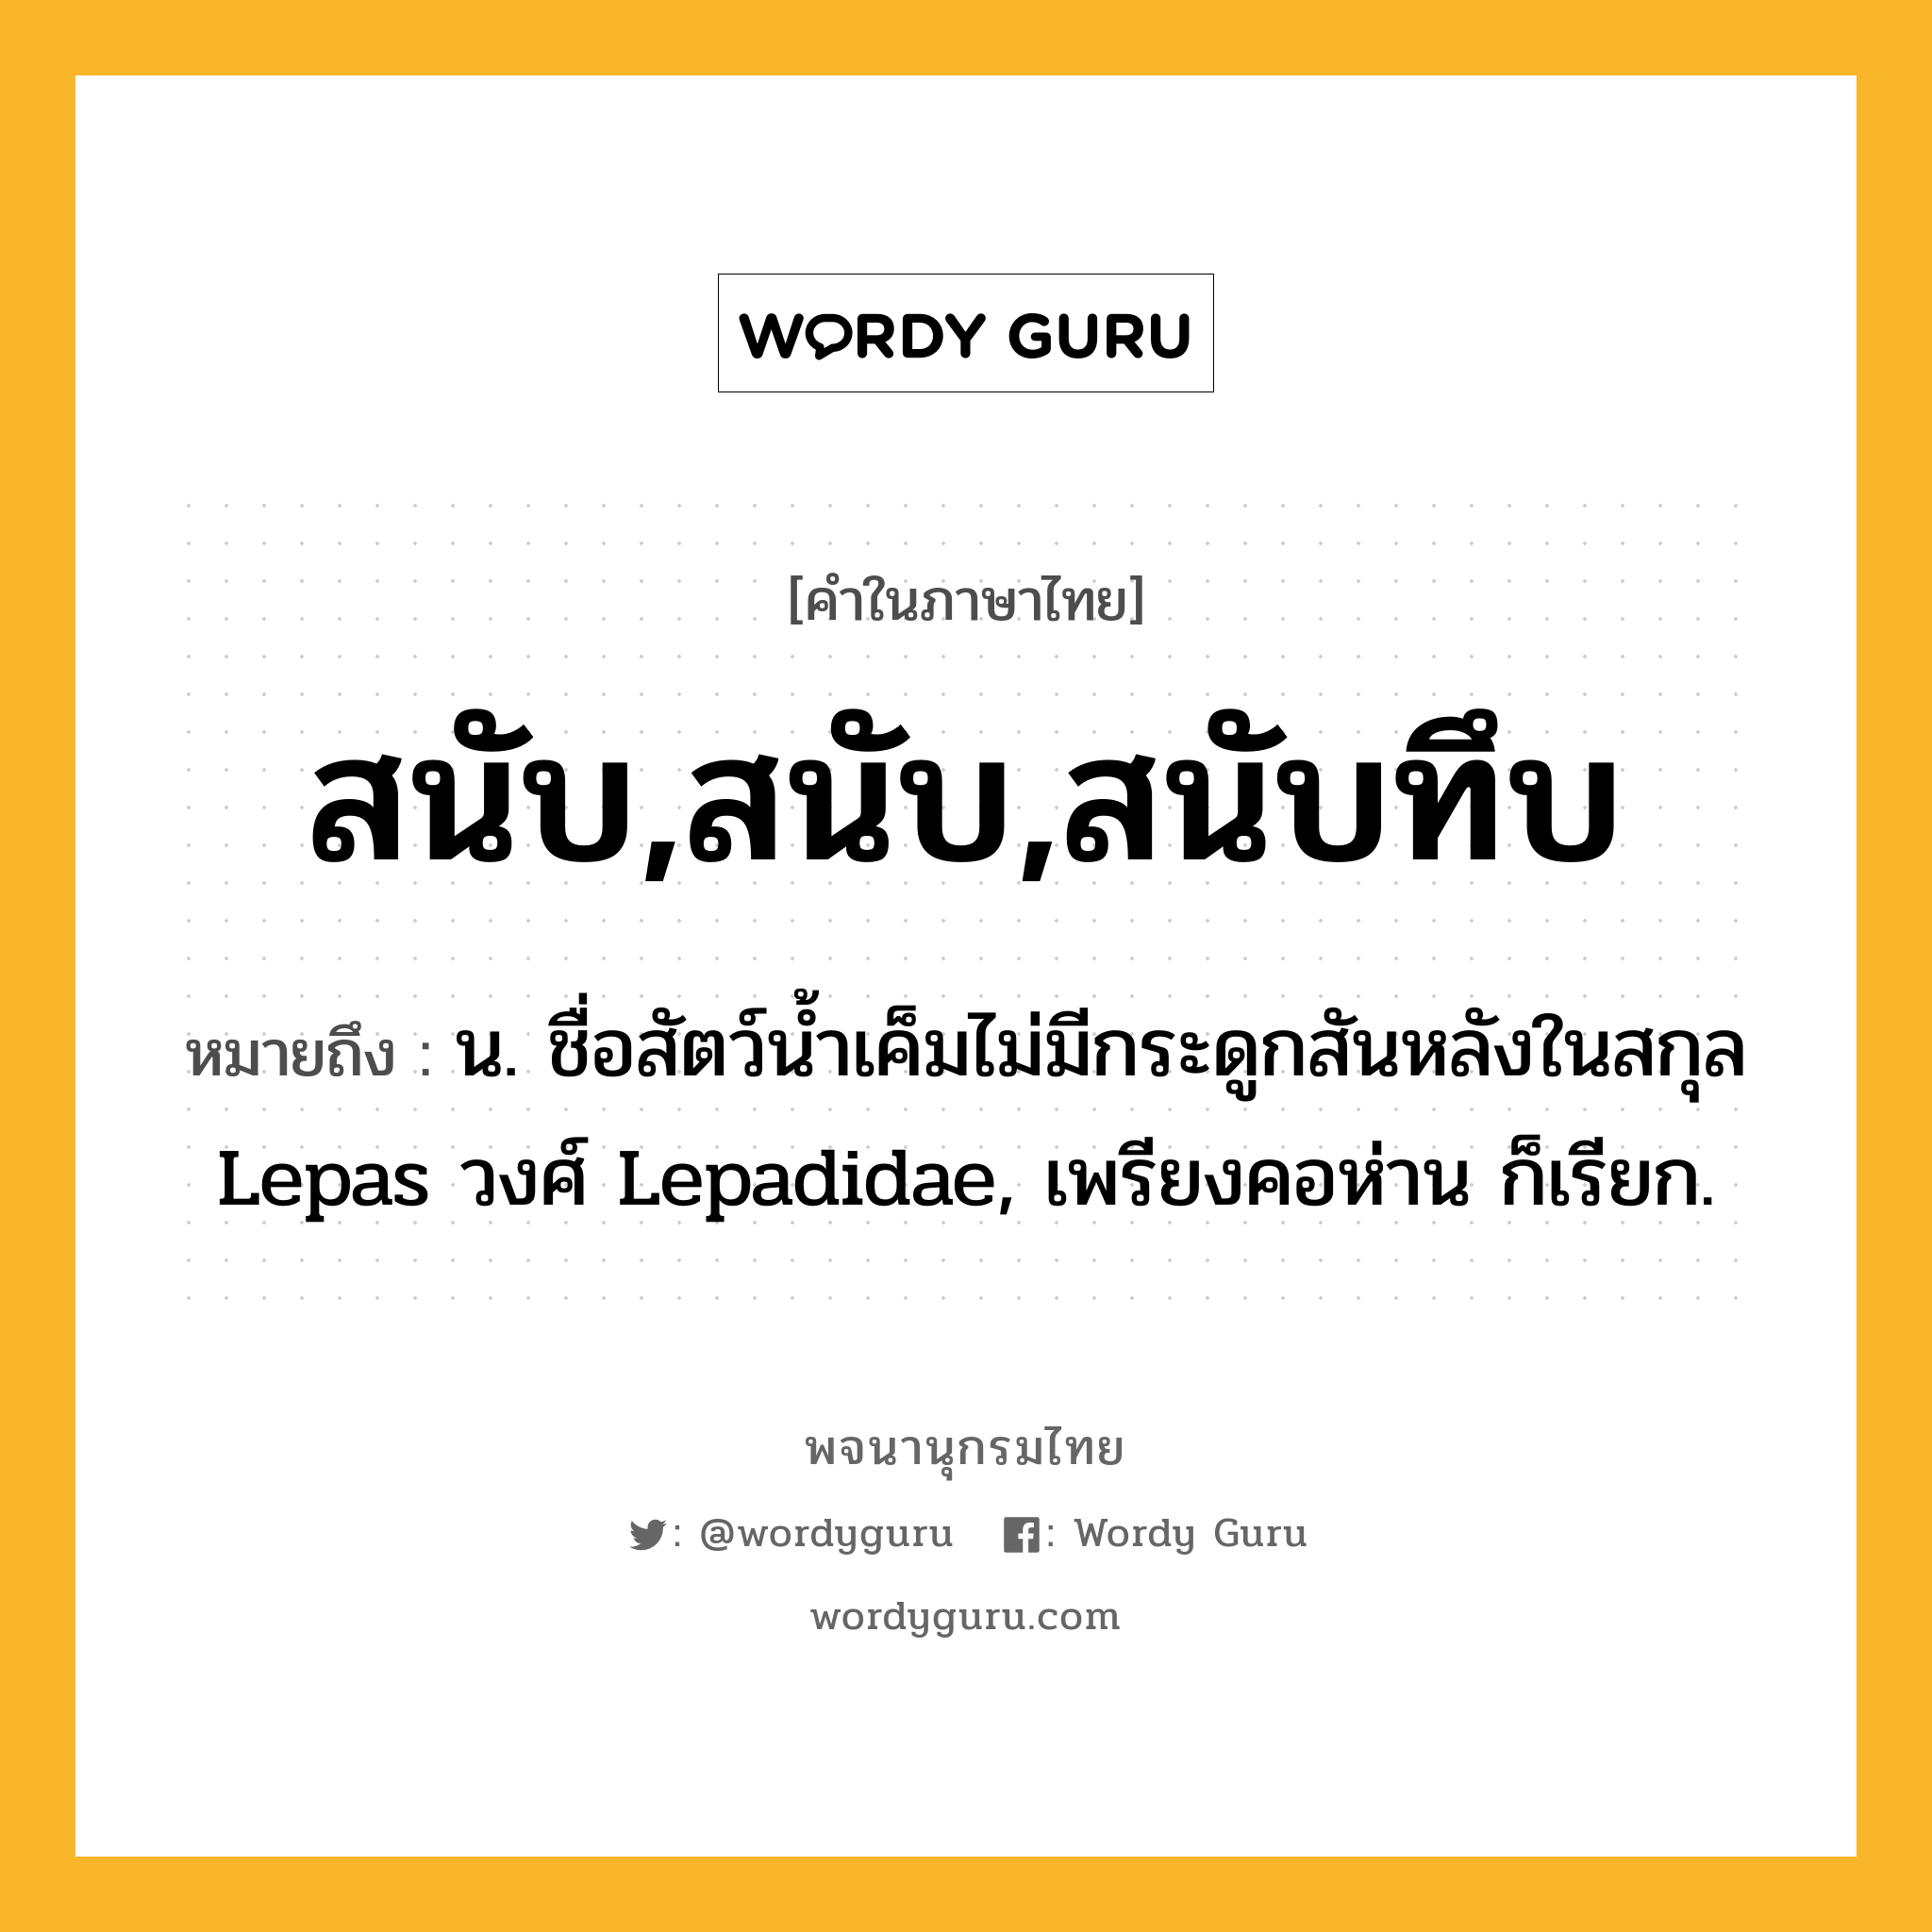 สนับ,สนับ,สนับทึบ ความหมาย หมายถึงอะไร?, คำในภาษาไทย สนับ,สนับ,สนับทึบ หมายถึง น. ชื่อสัตว์นํ้าเค็มไม่มีกระดูกสันหลังในสกุล Lepas วงศ์ Lepadidae, เพรียงคอห่าน ก็เรียก.